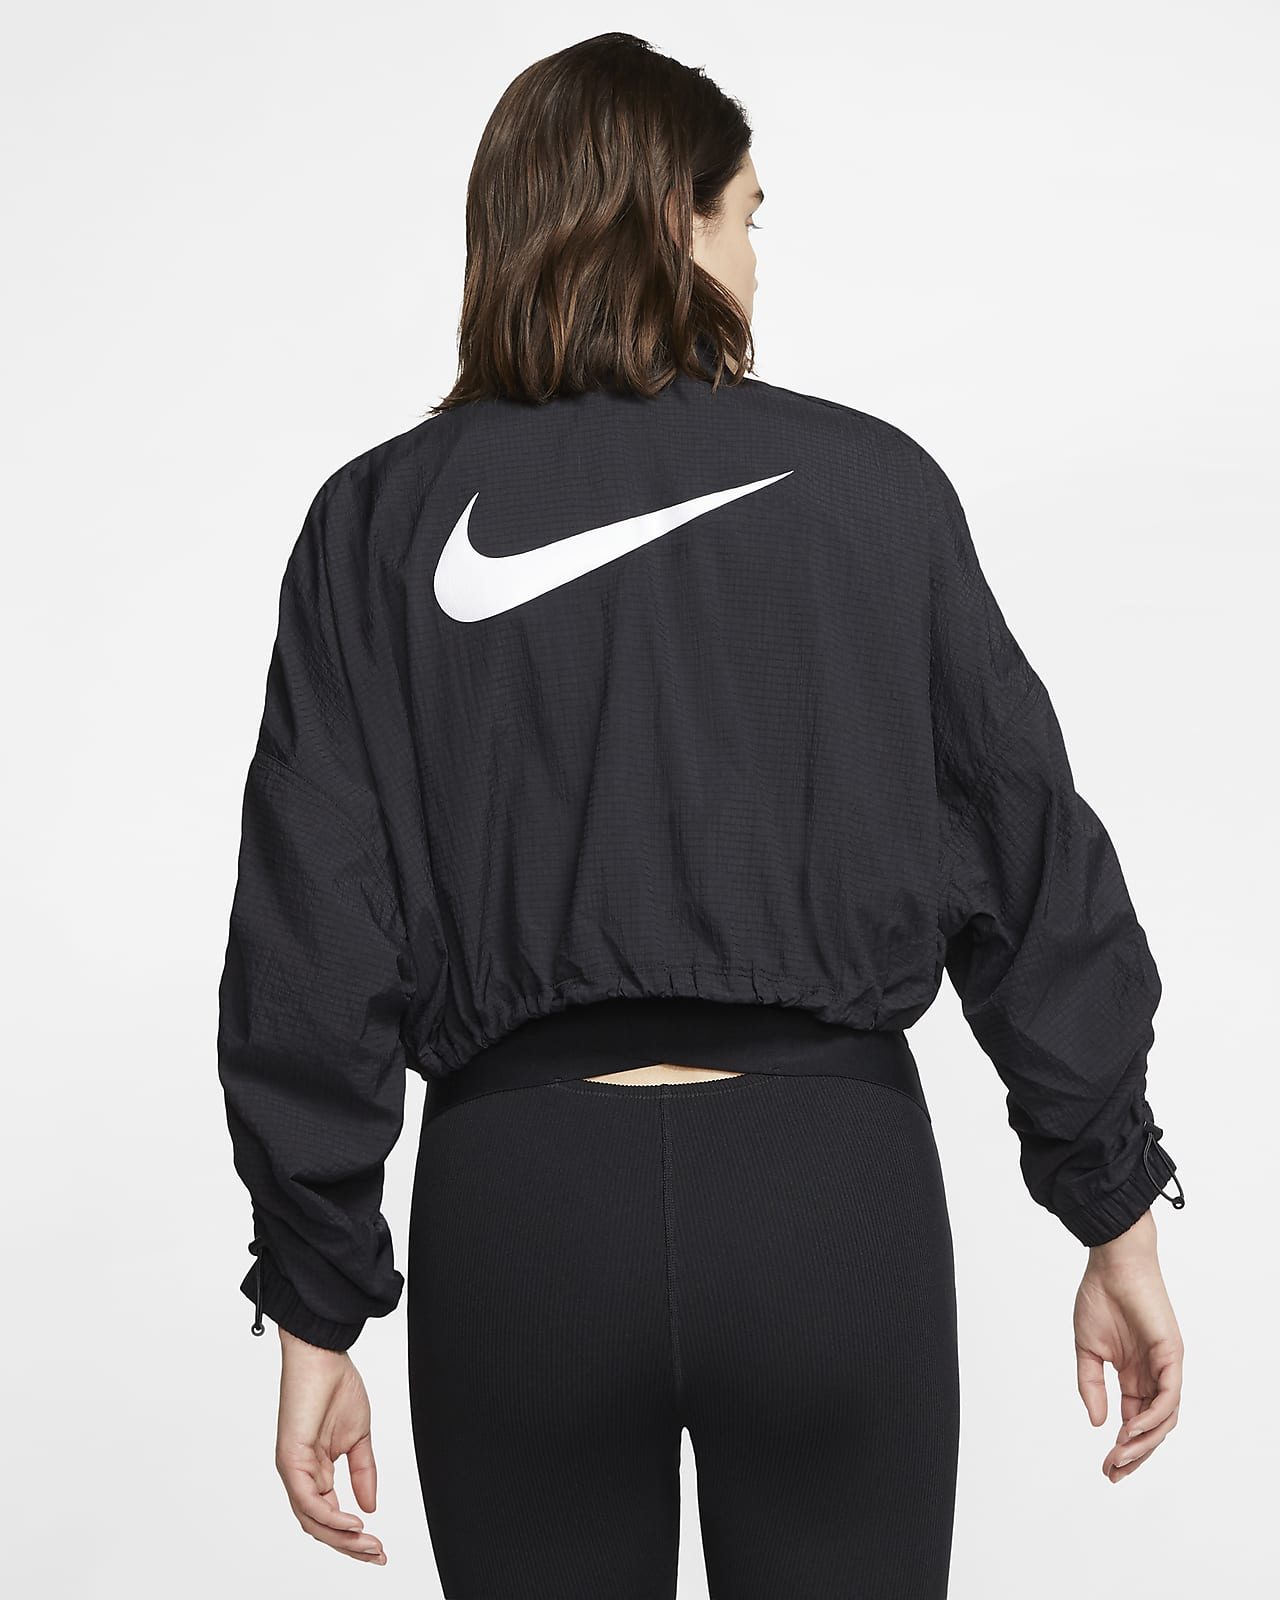 Nike Sportswear Swoosh Women's Woven Jacket. Nike EG